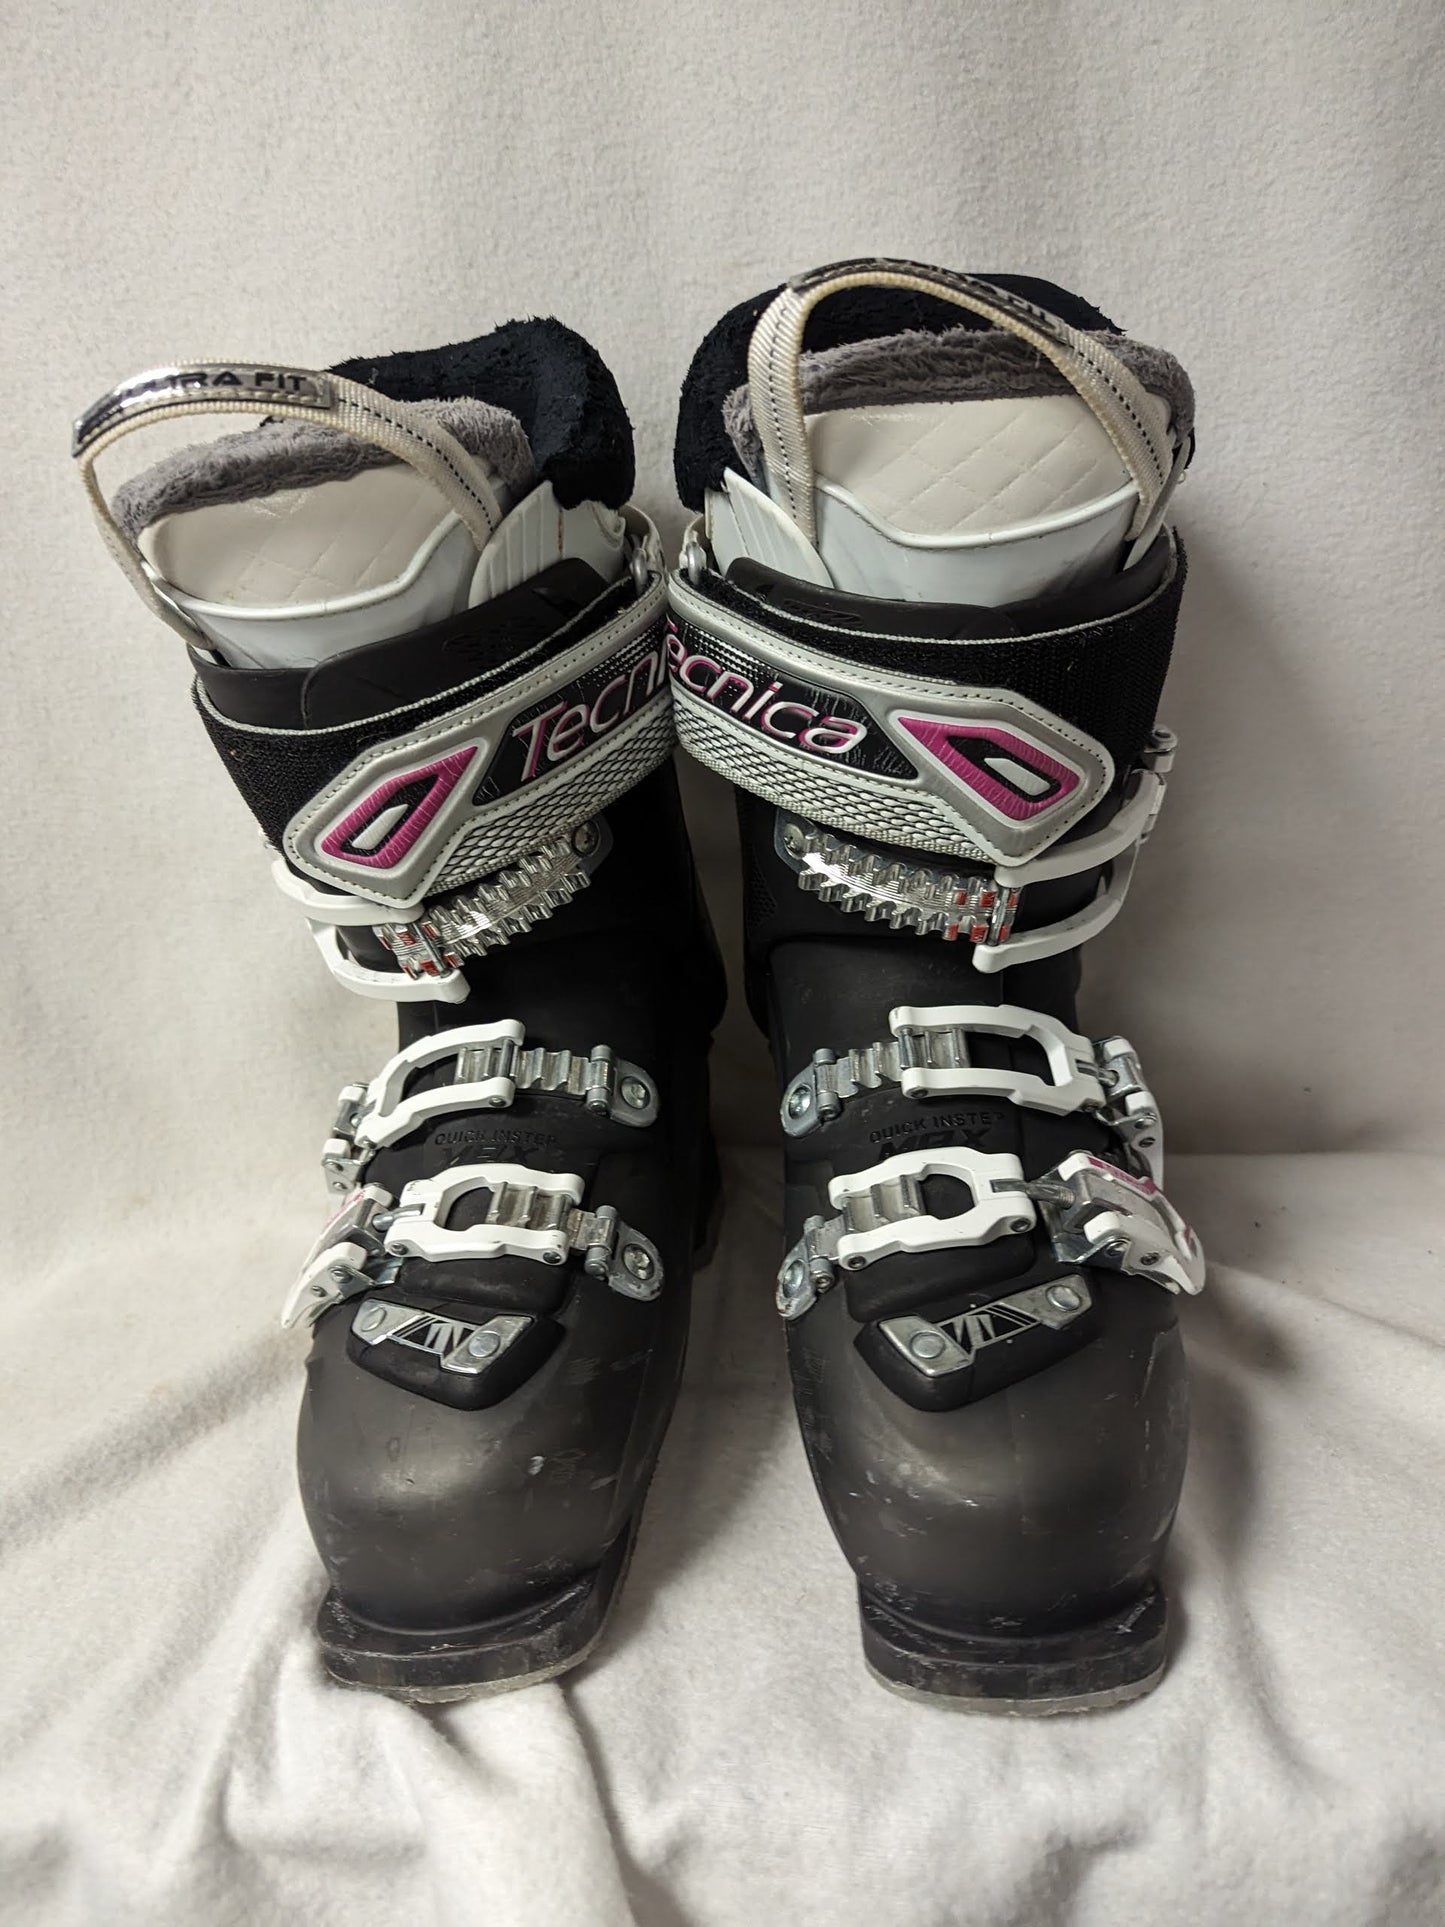 Tecnica Ten.2 85w Rebound Cuff Adapt Women's Ski Boots Size 24.5 Color White Condition Used